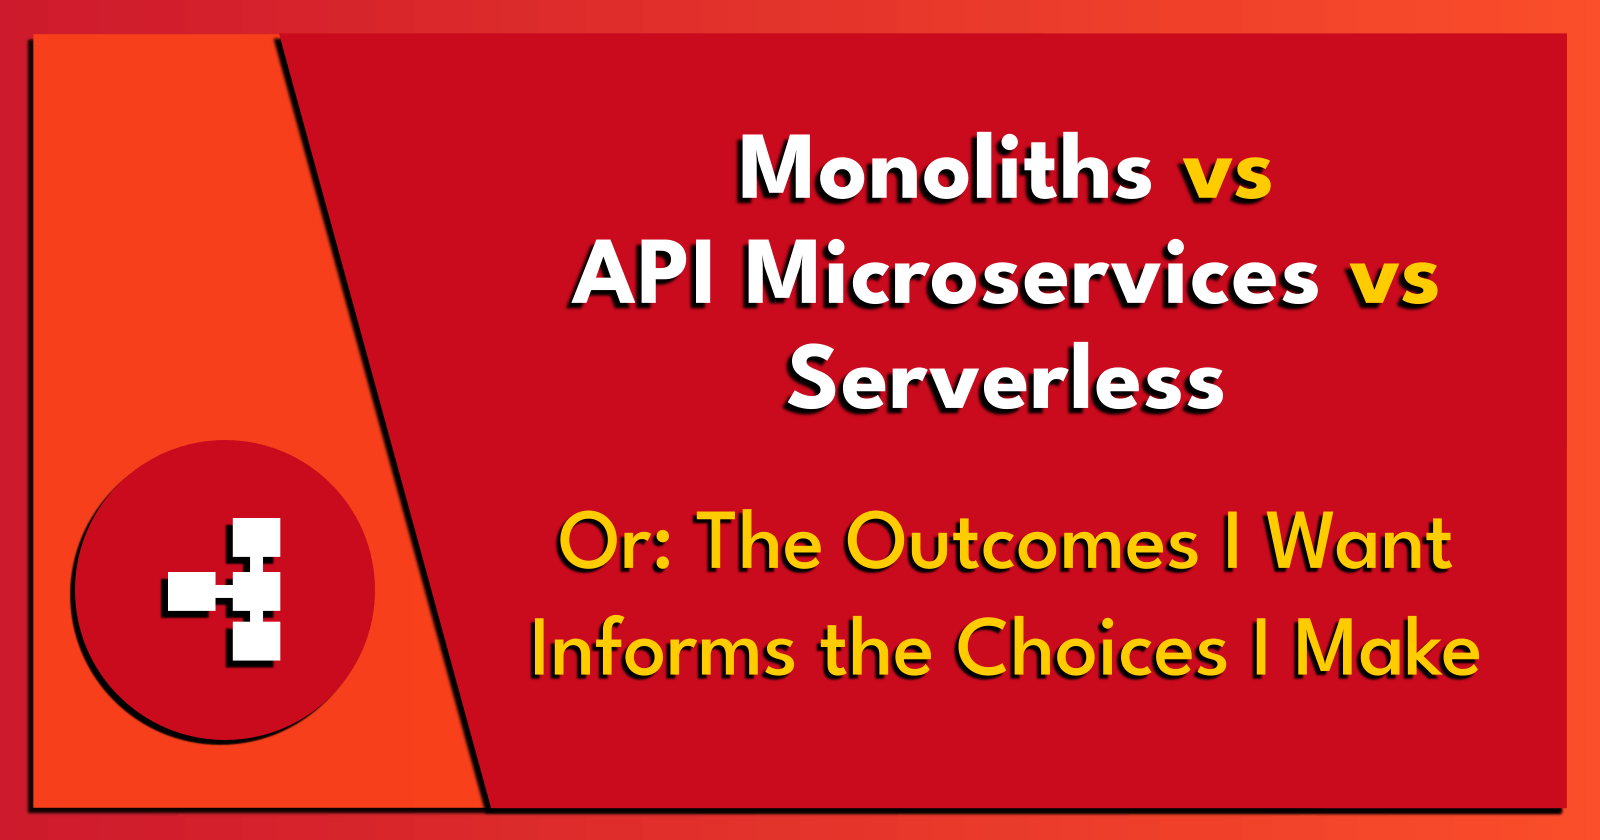 Monoliths vs API Microservices vs Serverless.